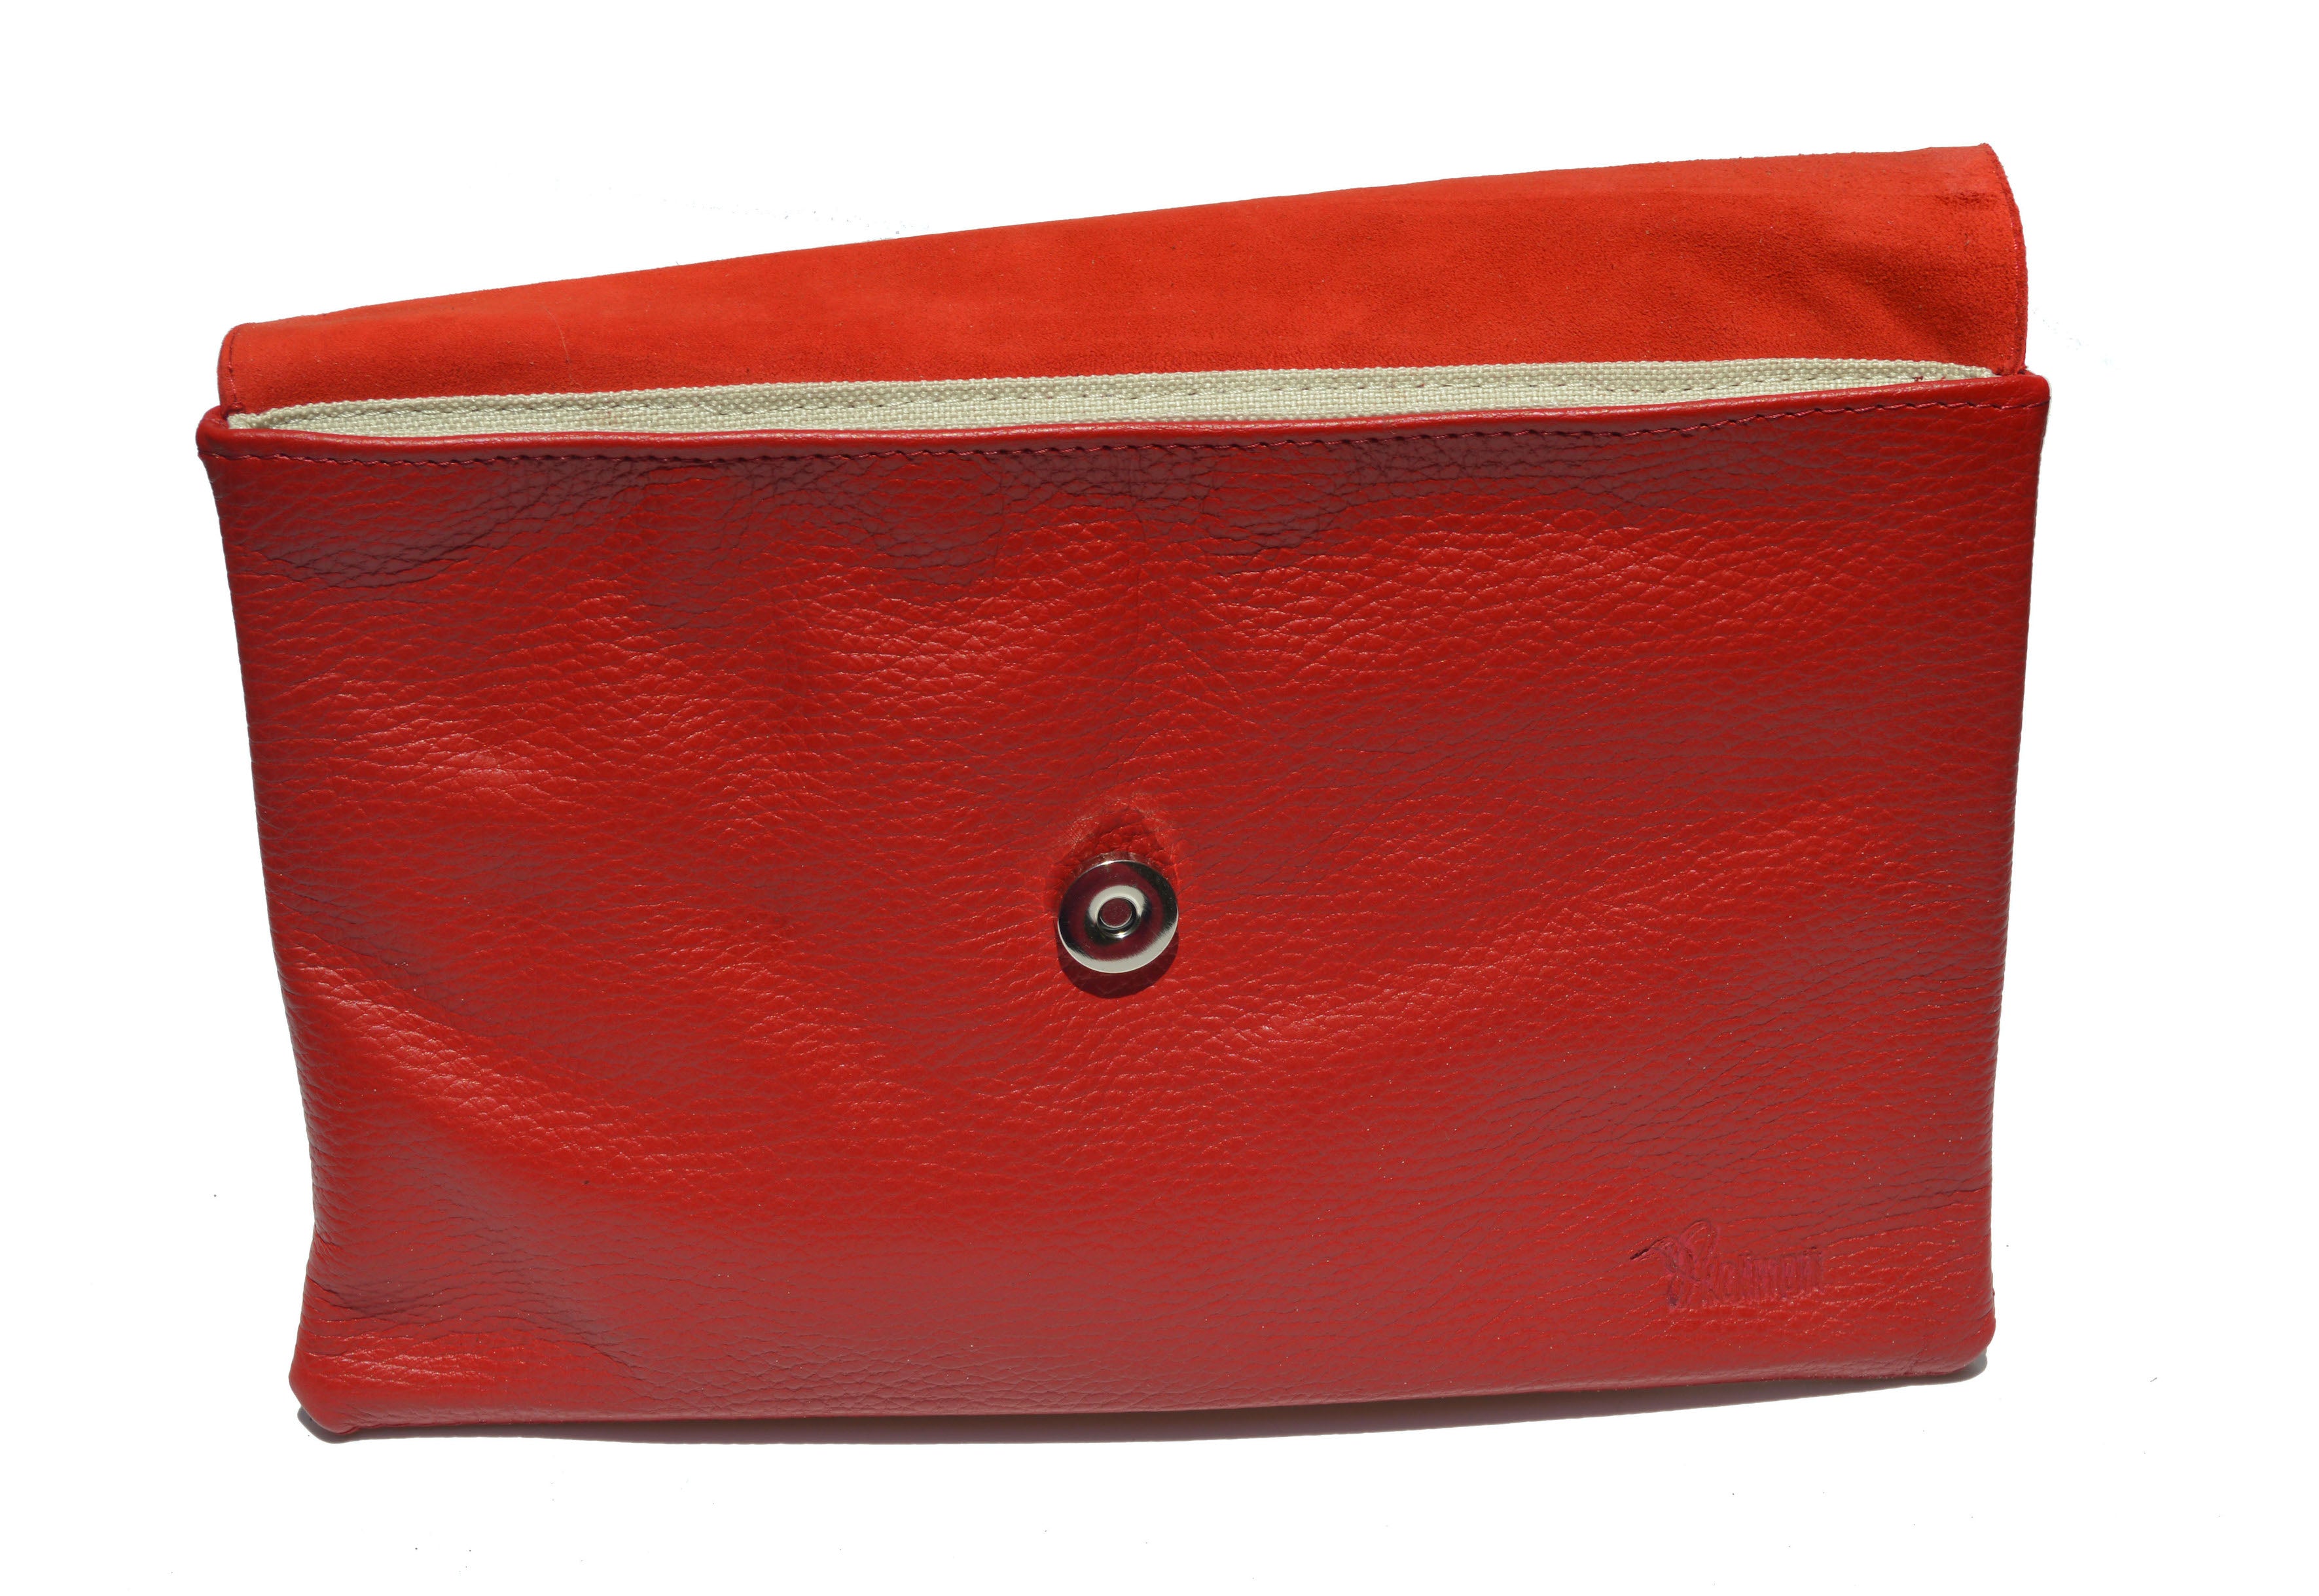 Bolso clutch modelo perlita rojo - ágata gris